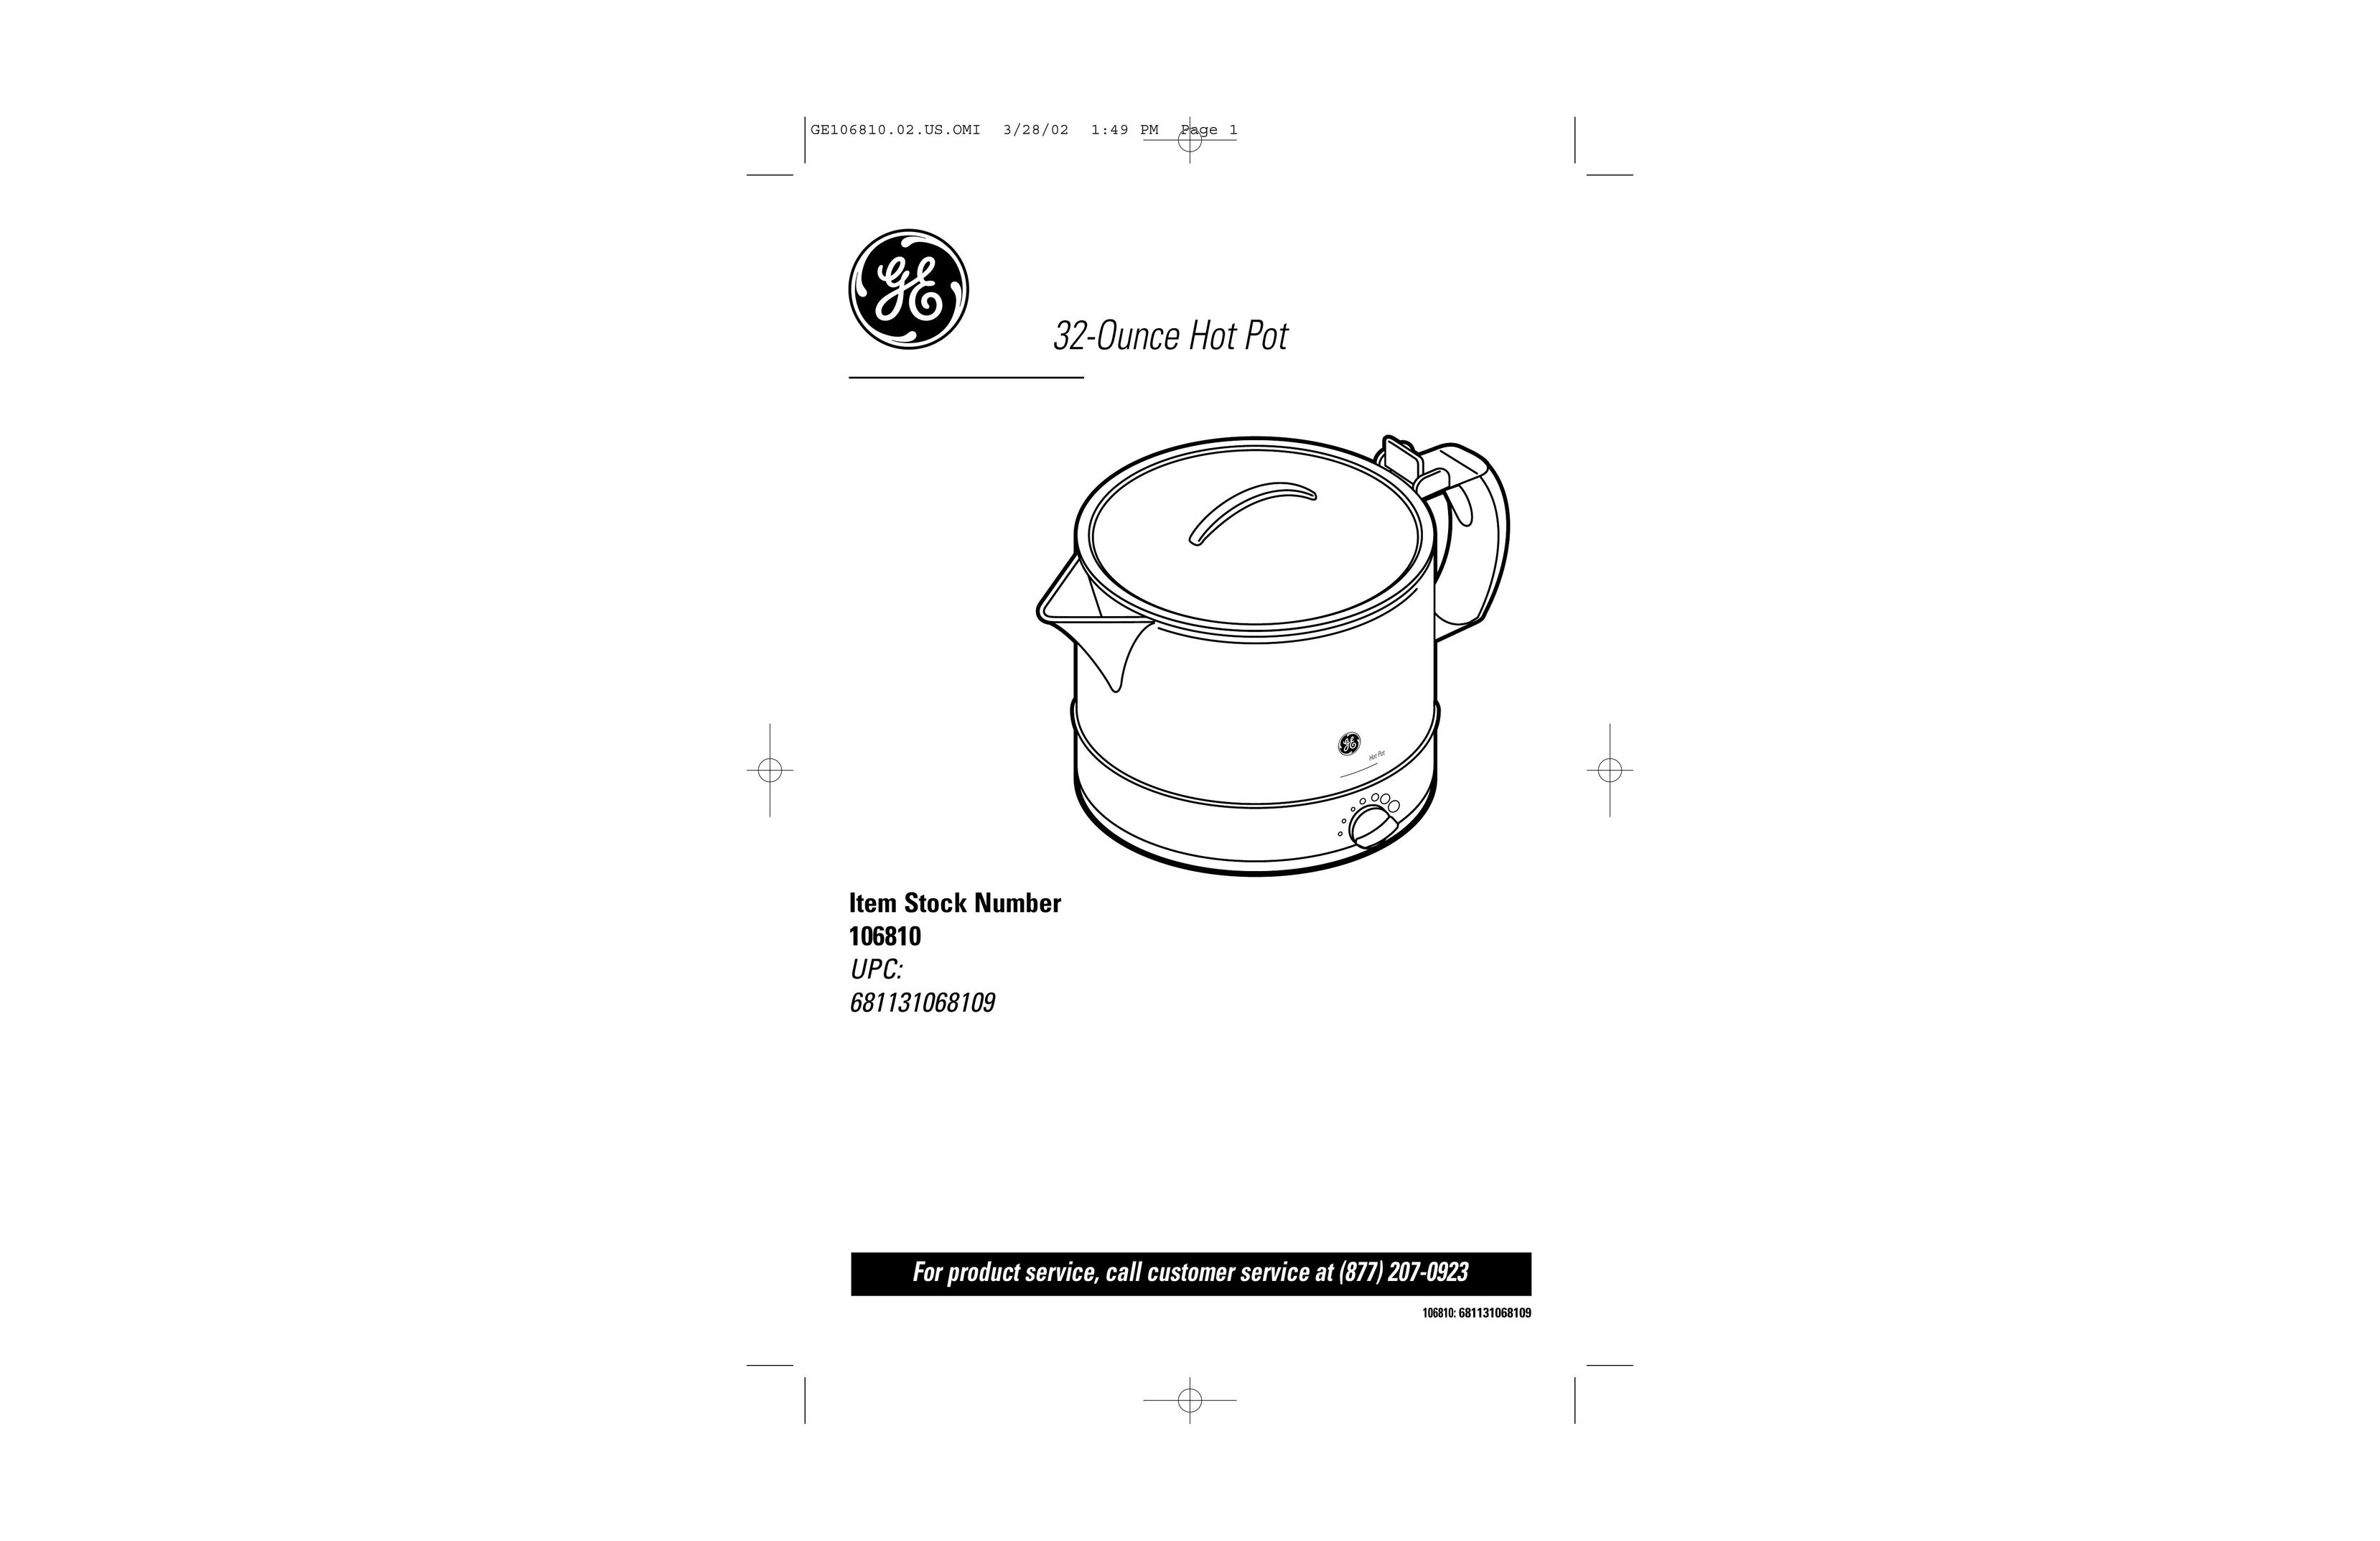 GE 106810 Hot Beverage Maker User Manual